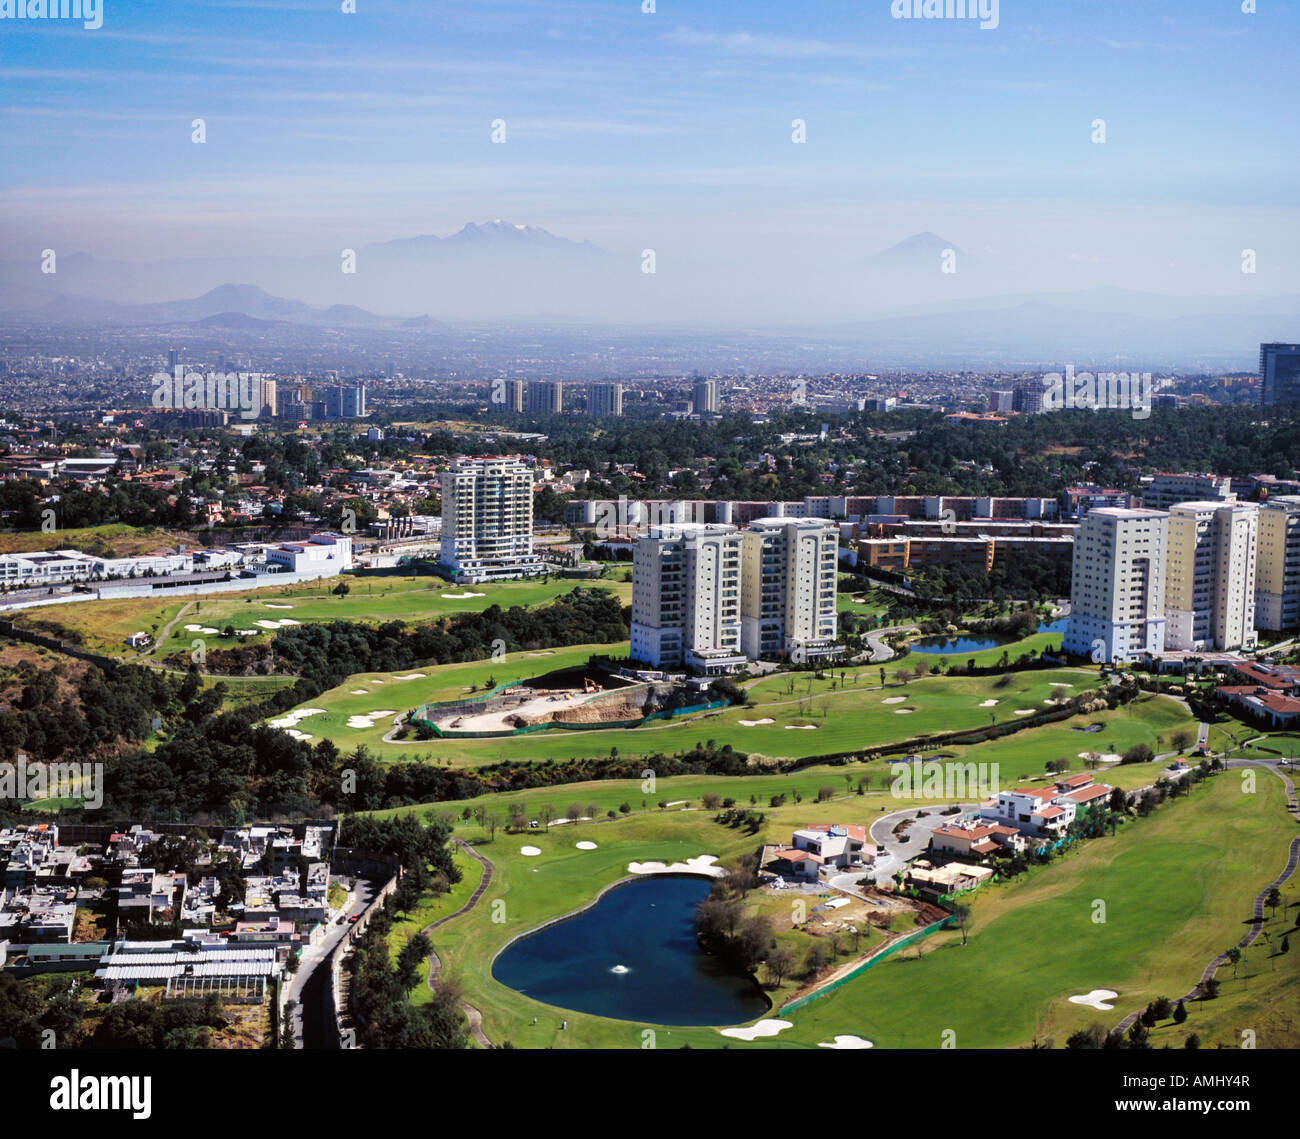 aerial view above golf course Interlomas Mexico City Stock Photo